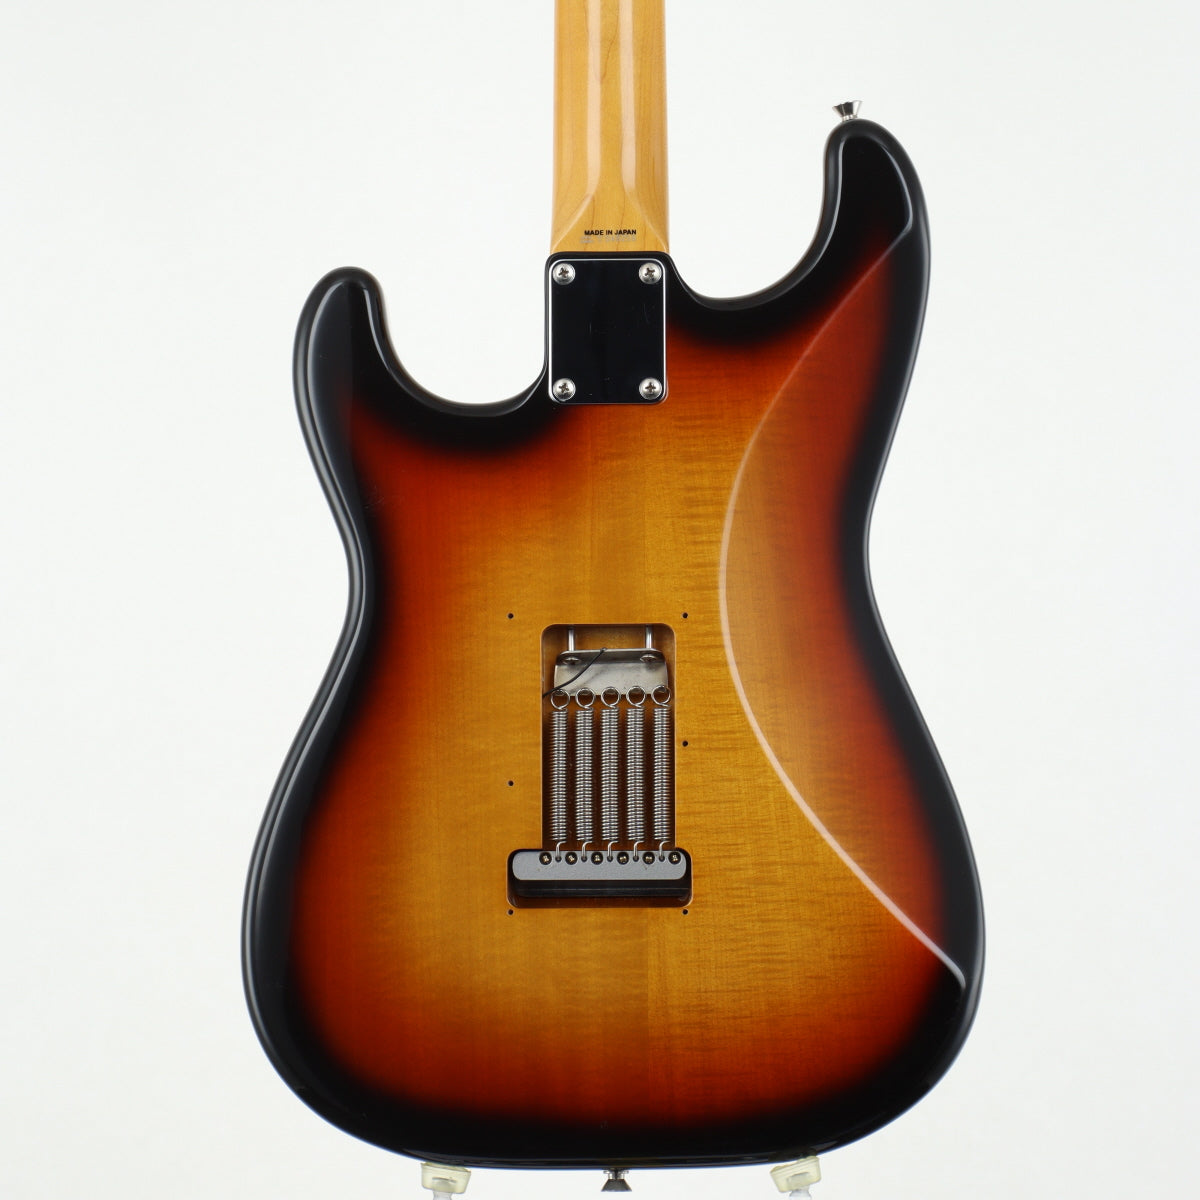 [SN MIJ T048256] USED Fender Japan Fender Japan / ST62-DMC 3Tone Sunburst [20]